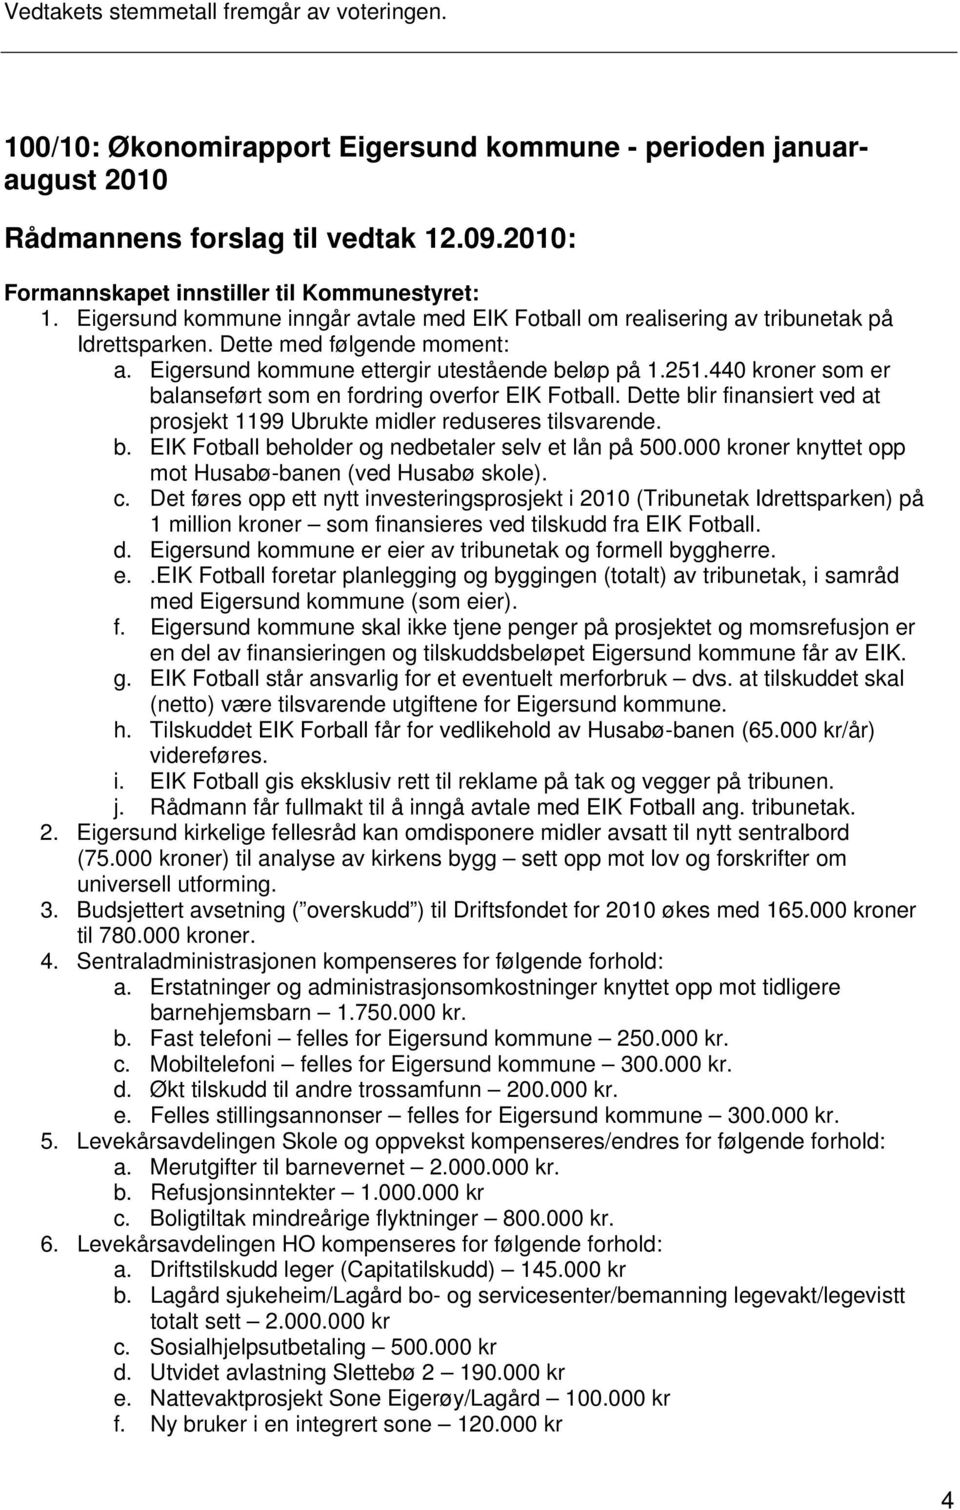 Eigersund kommune ettergir utestående beløp på 1.251.440 kroner som er balanseført som en fordring overfor EIK Fotball. Dette blir finansiert ved at prosjekt 1199 Ubrukte midler reduseres tilsvarende.